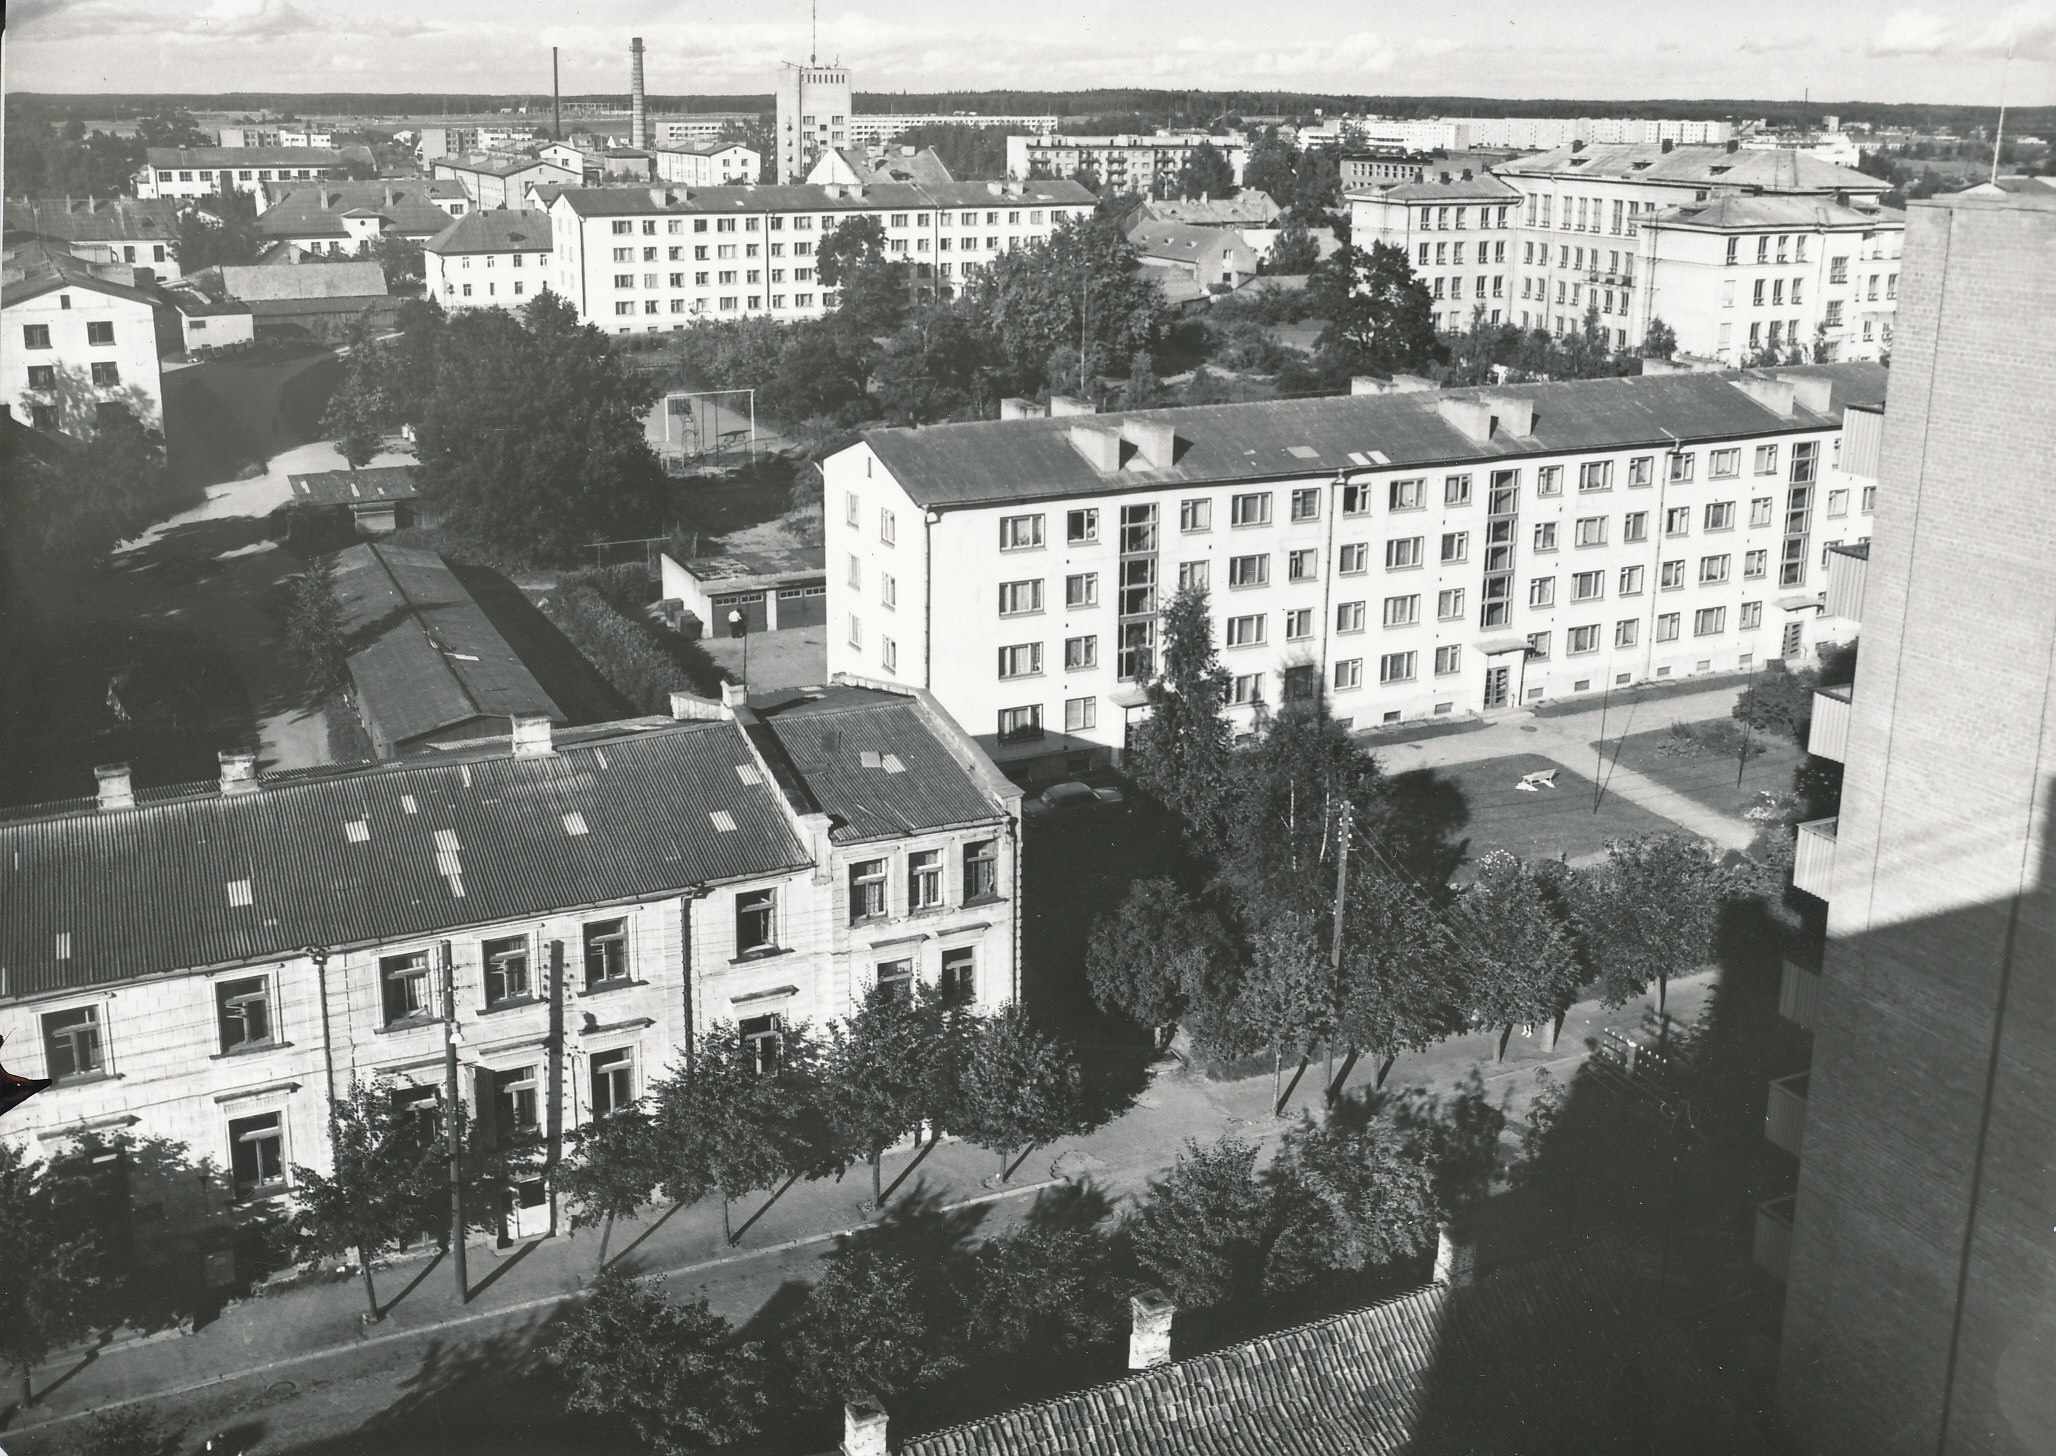 Foto. Võru vaade Kreutzwaldi tänav 22 hoone katuselt Tartu tänava suunas 1982.a. augustis.